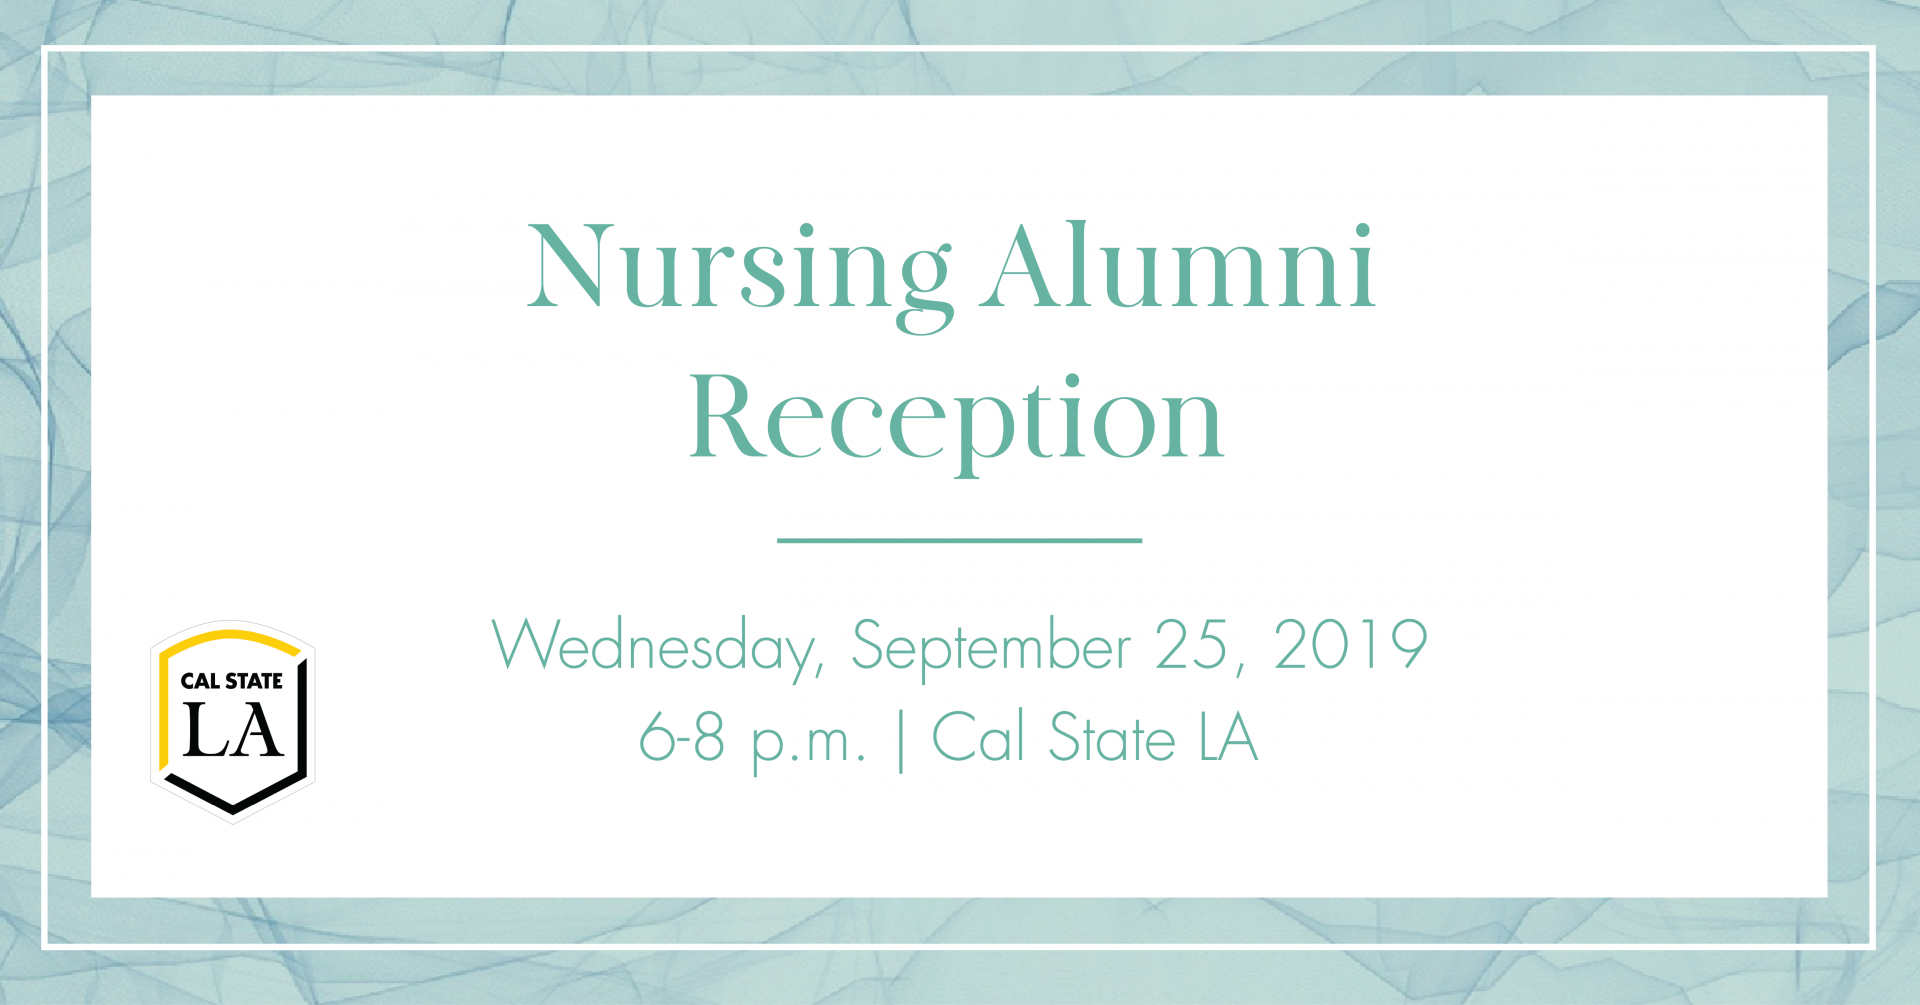 Nursing Alumni Reception on September 25. 